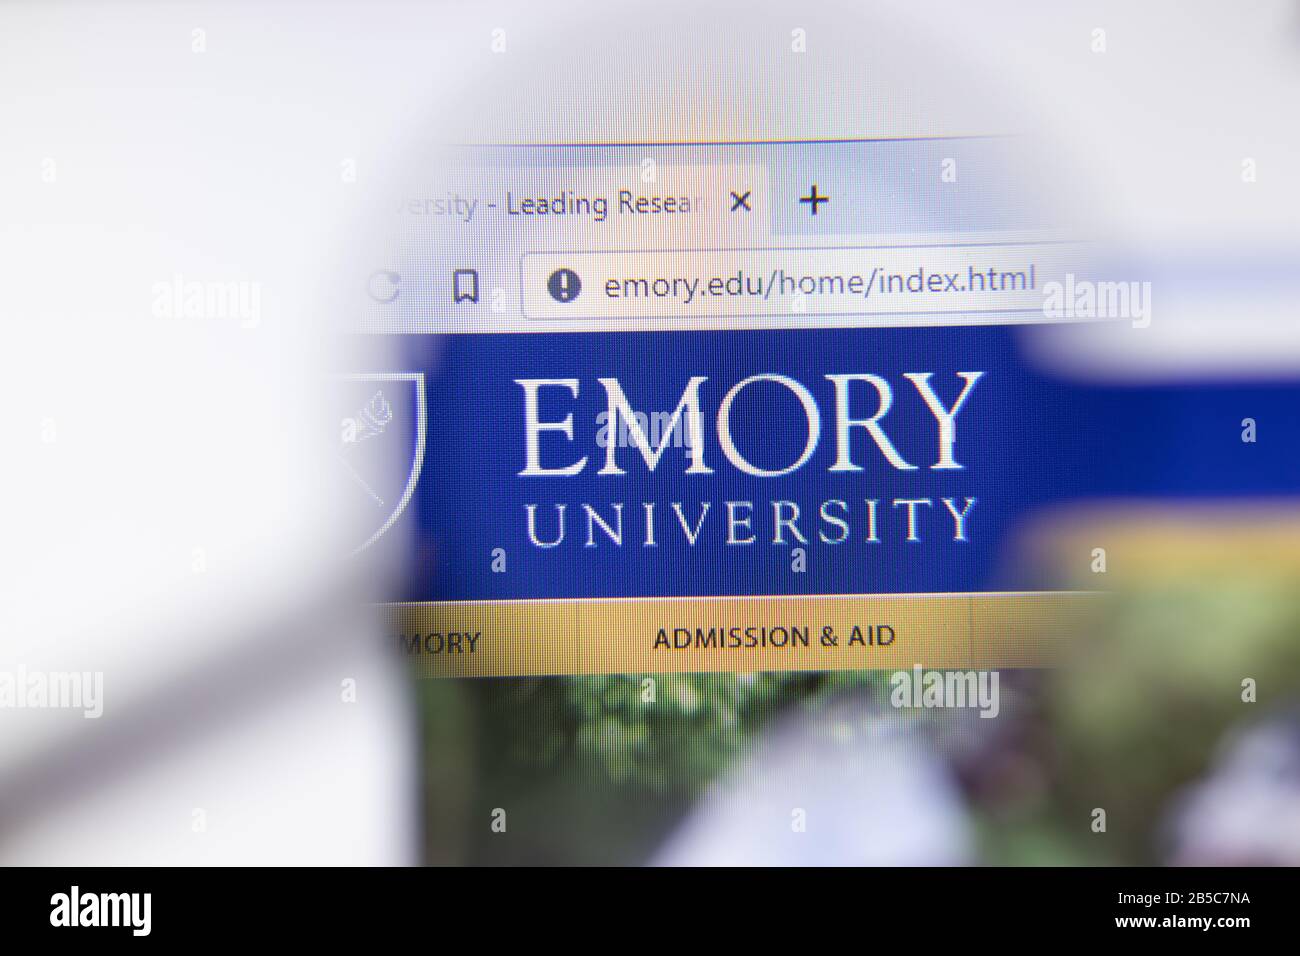 Los Angeles, California, Stati Uniti - 7 marzo 2020: Logo della homepage del sito web della Emory University visibile in primo piano, editoriale Illustrativo Foto Stock